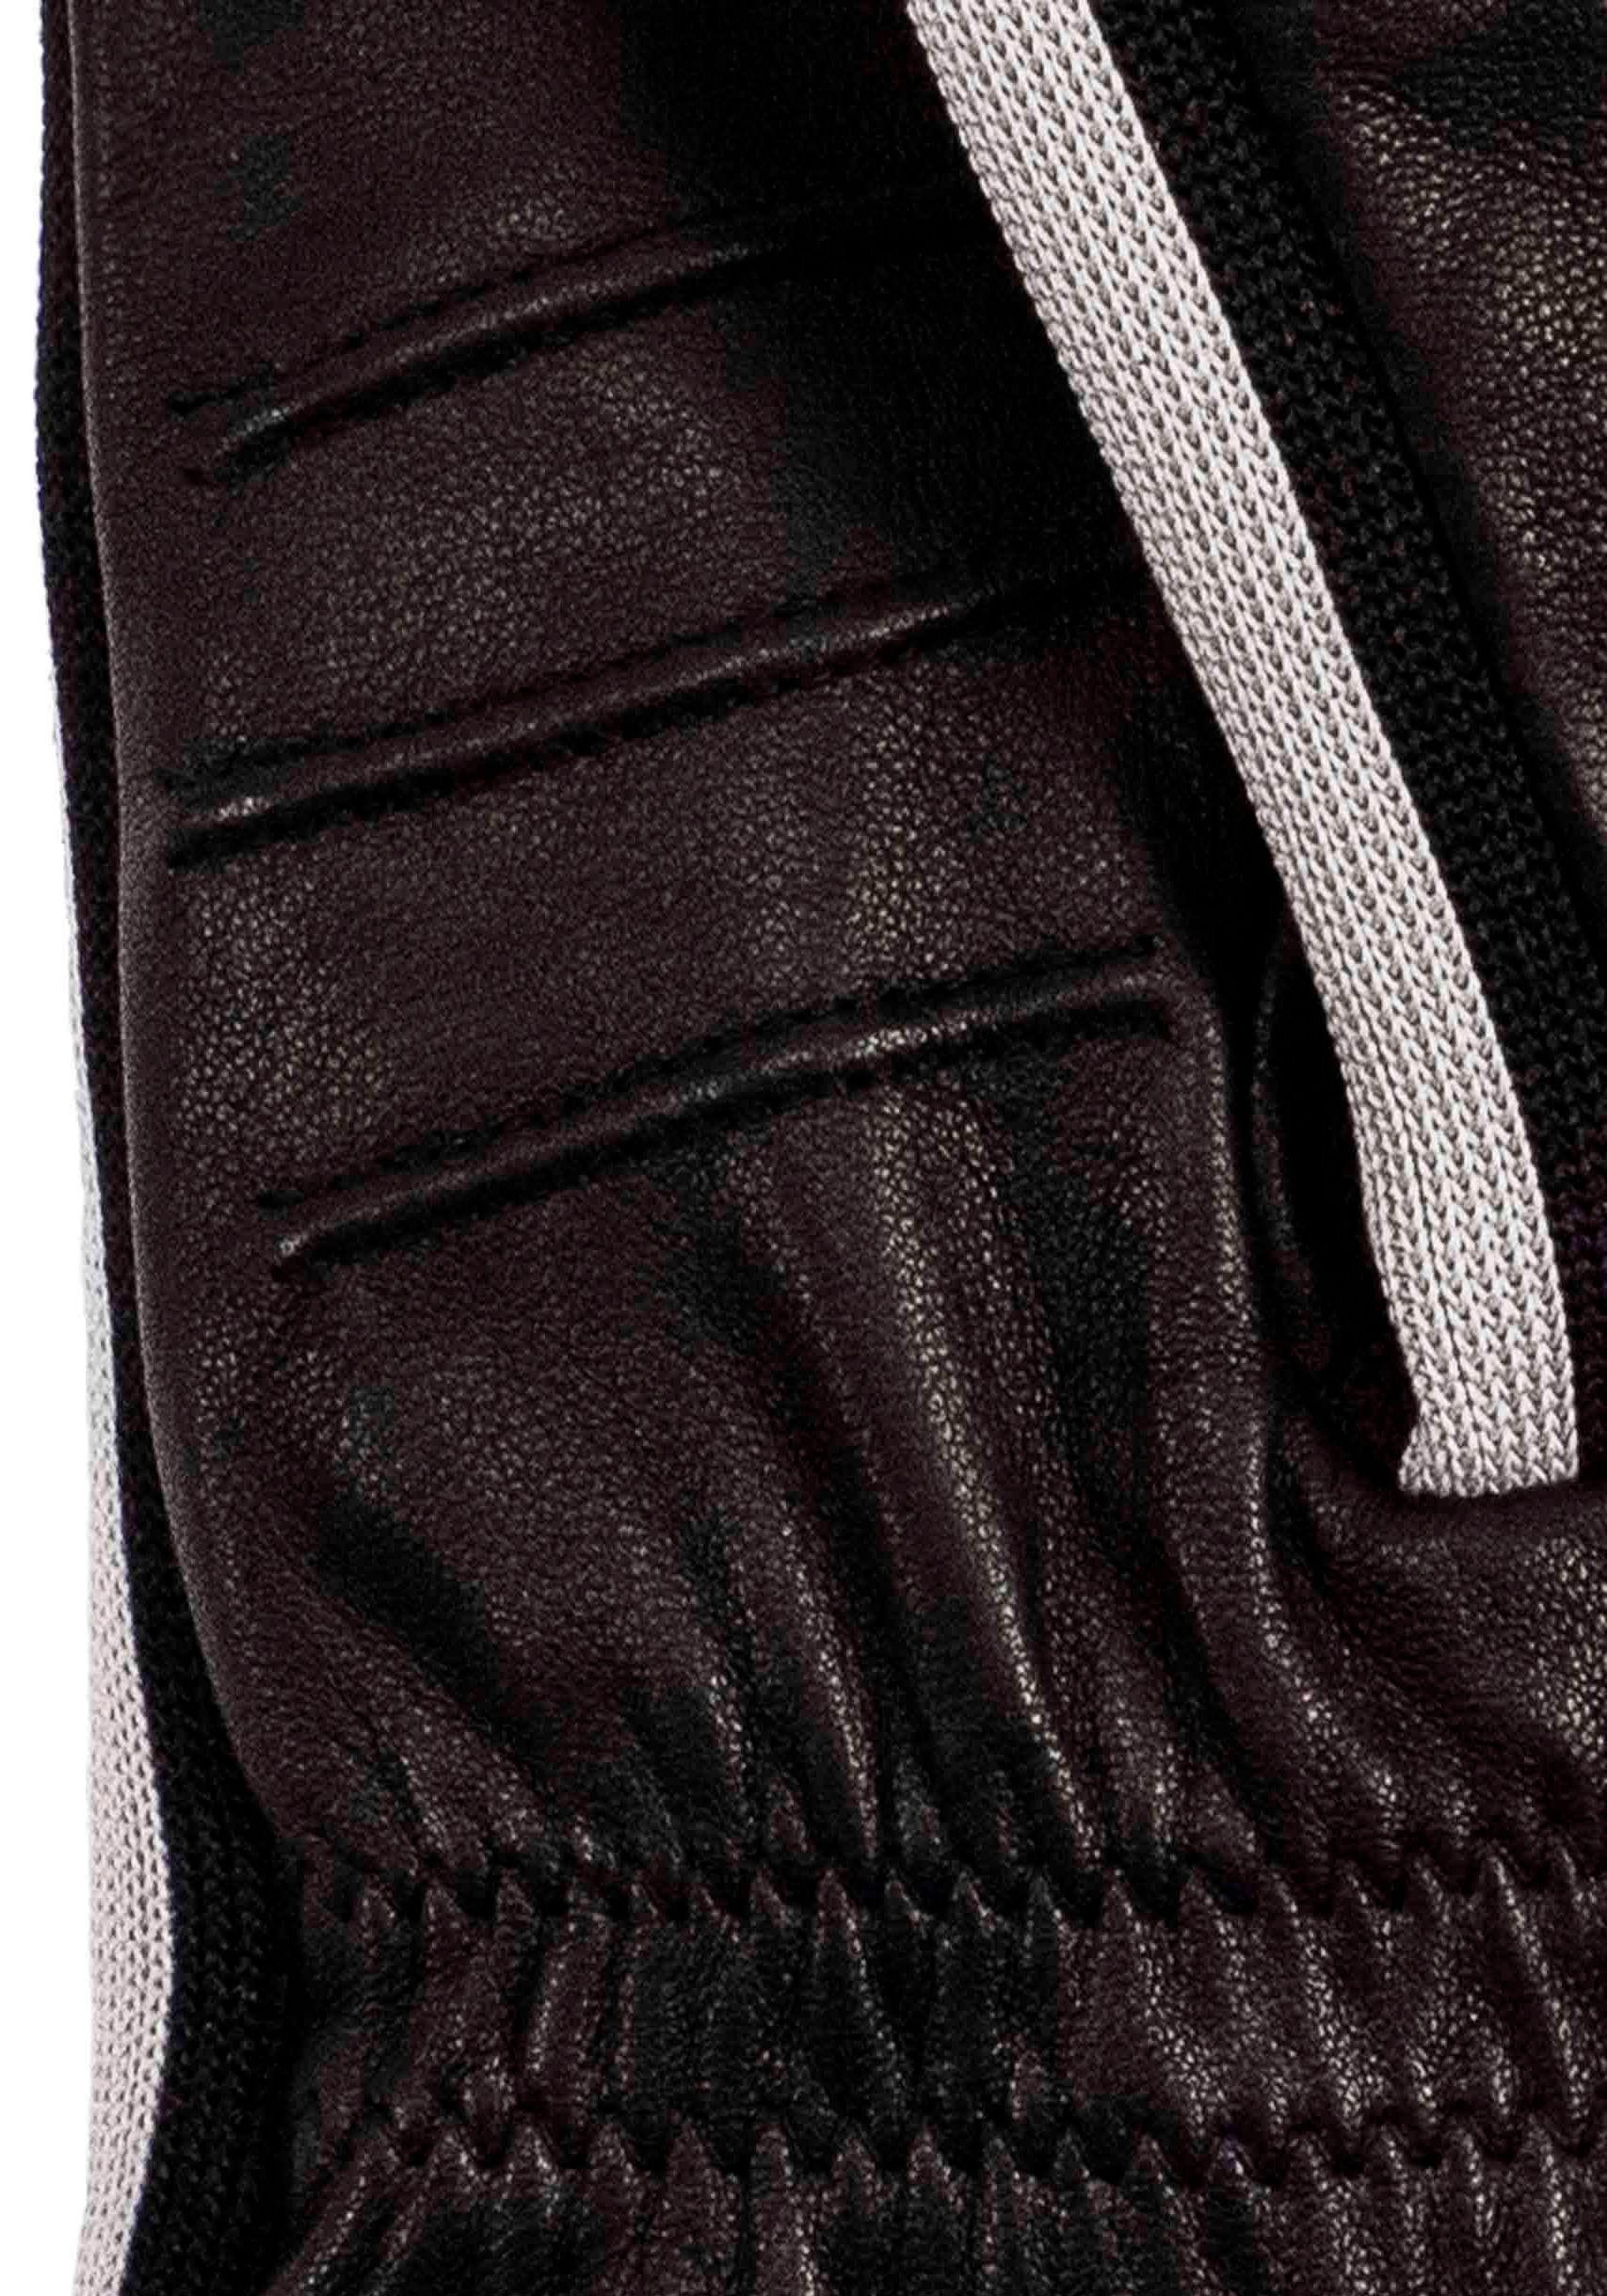 KESSLER Lederhandschuhe Jack Look Design mit im sportliches Touchfunktion Sneaker- Touch black